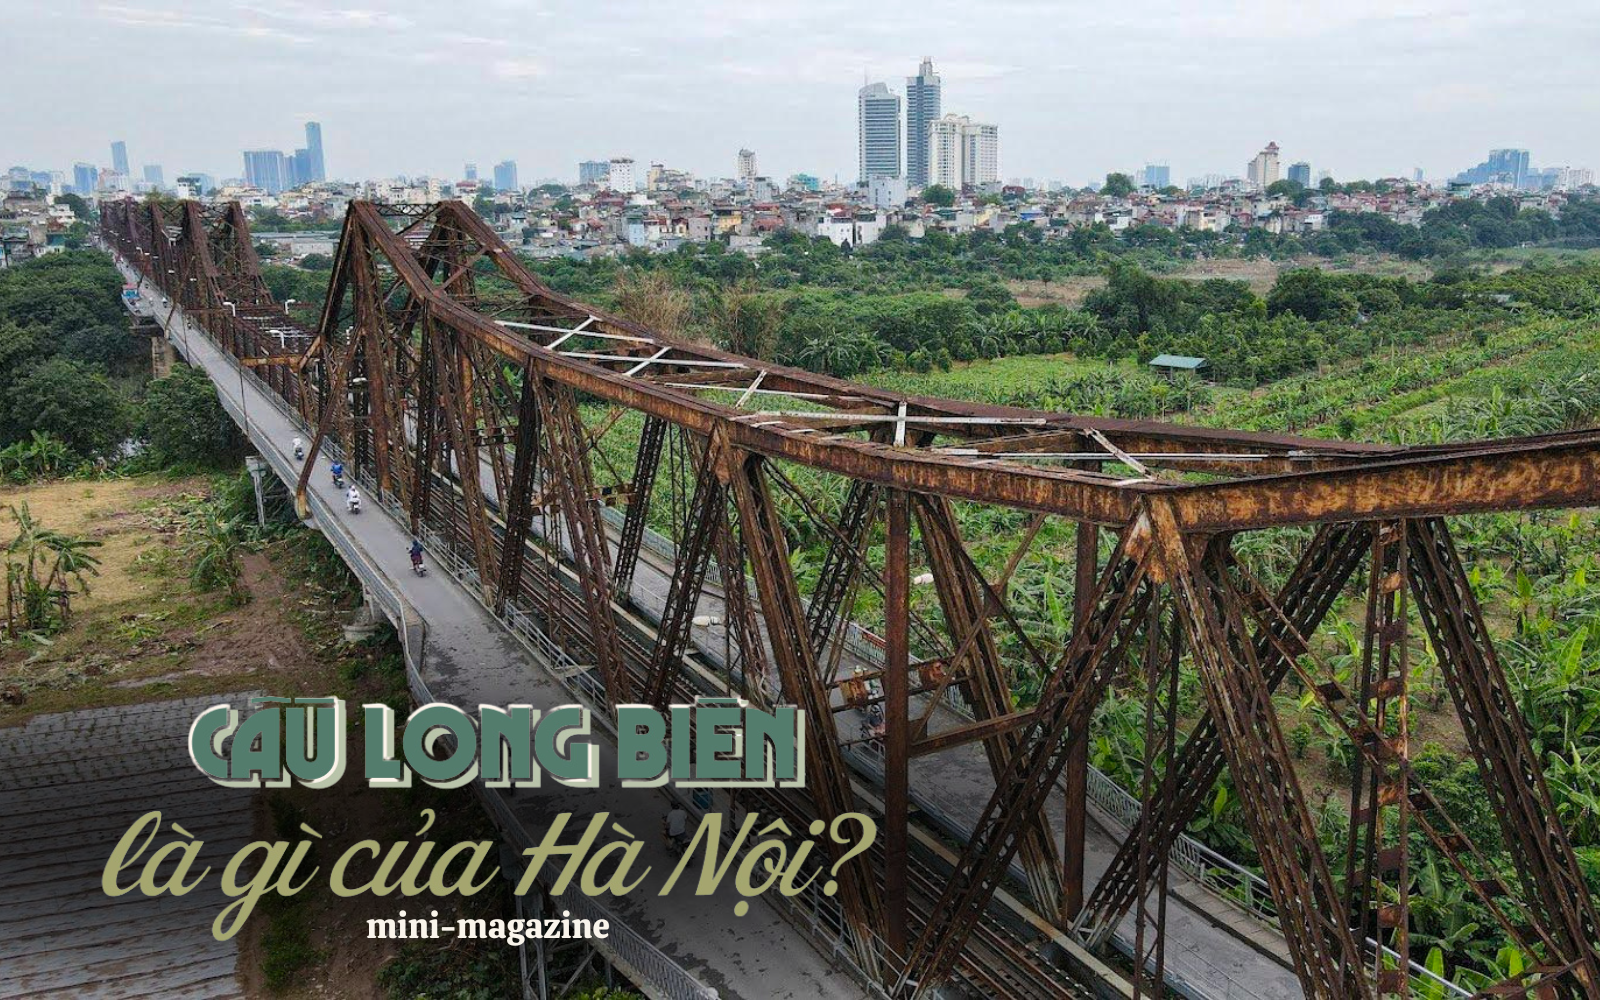 Cầu Long Biên: Kiệt tác nghệ thuật kiến trúc - chứng nhân lịch sử của dân tộc đã đến lúc cần được nghỉ ngơi